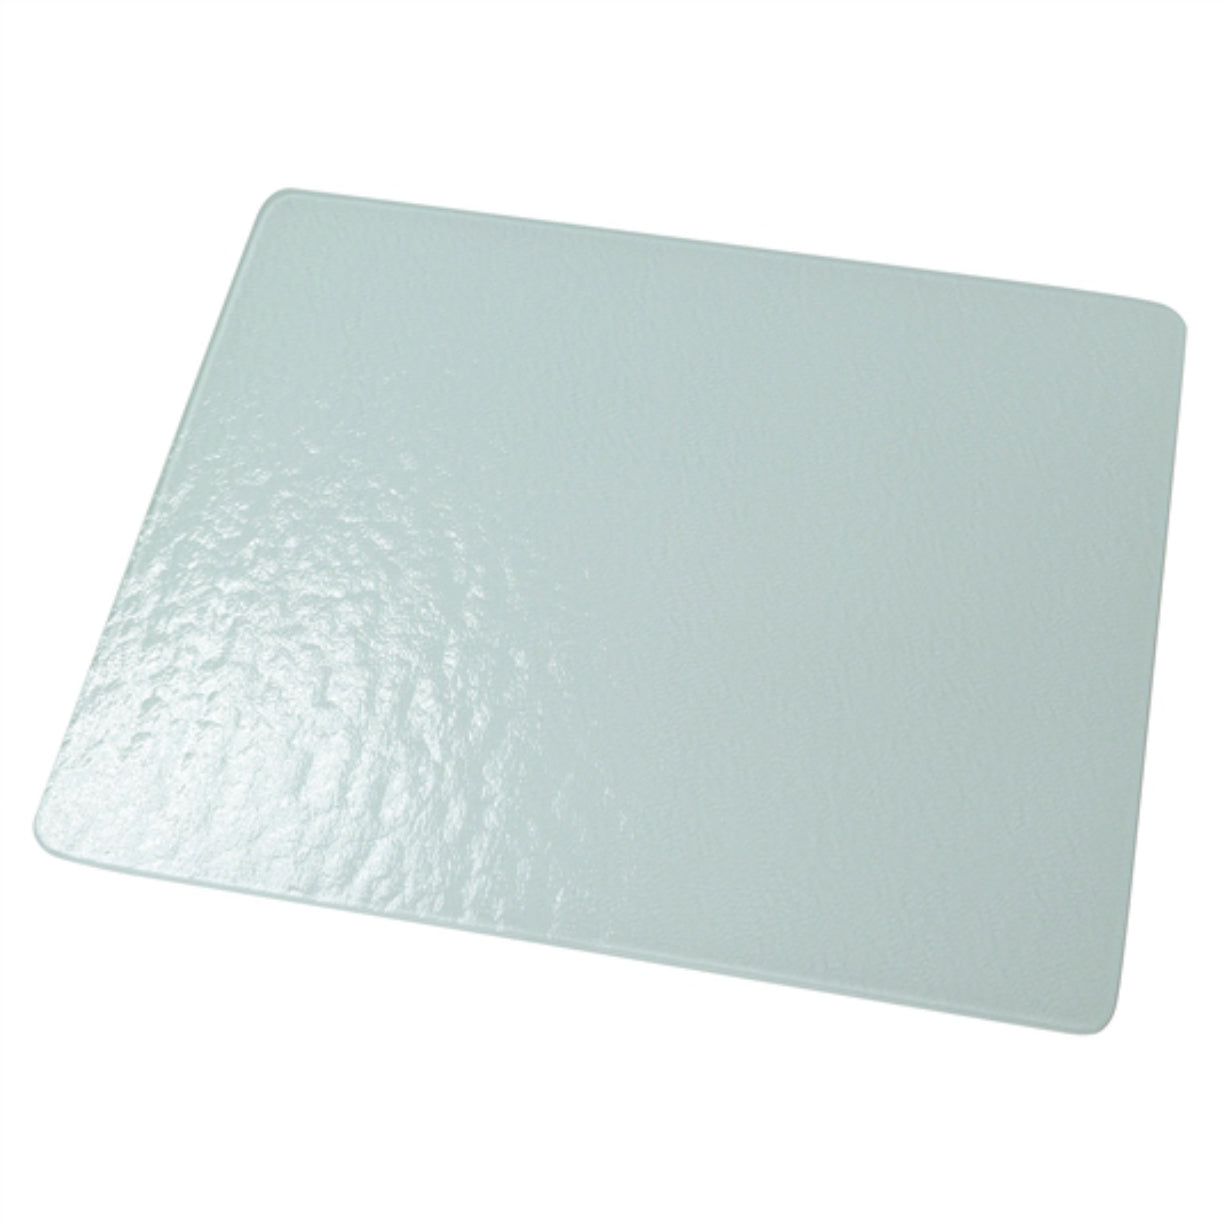 "Glass Hot Plate/Cutting Board" - 12x15"